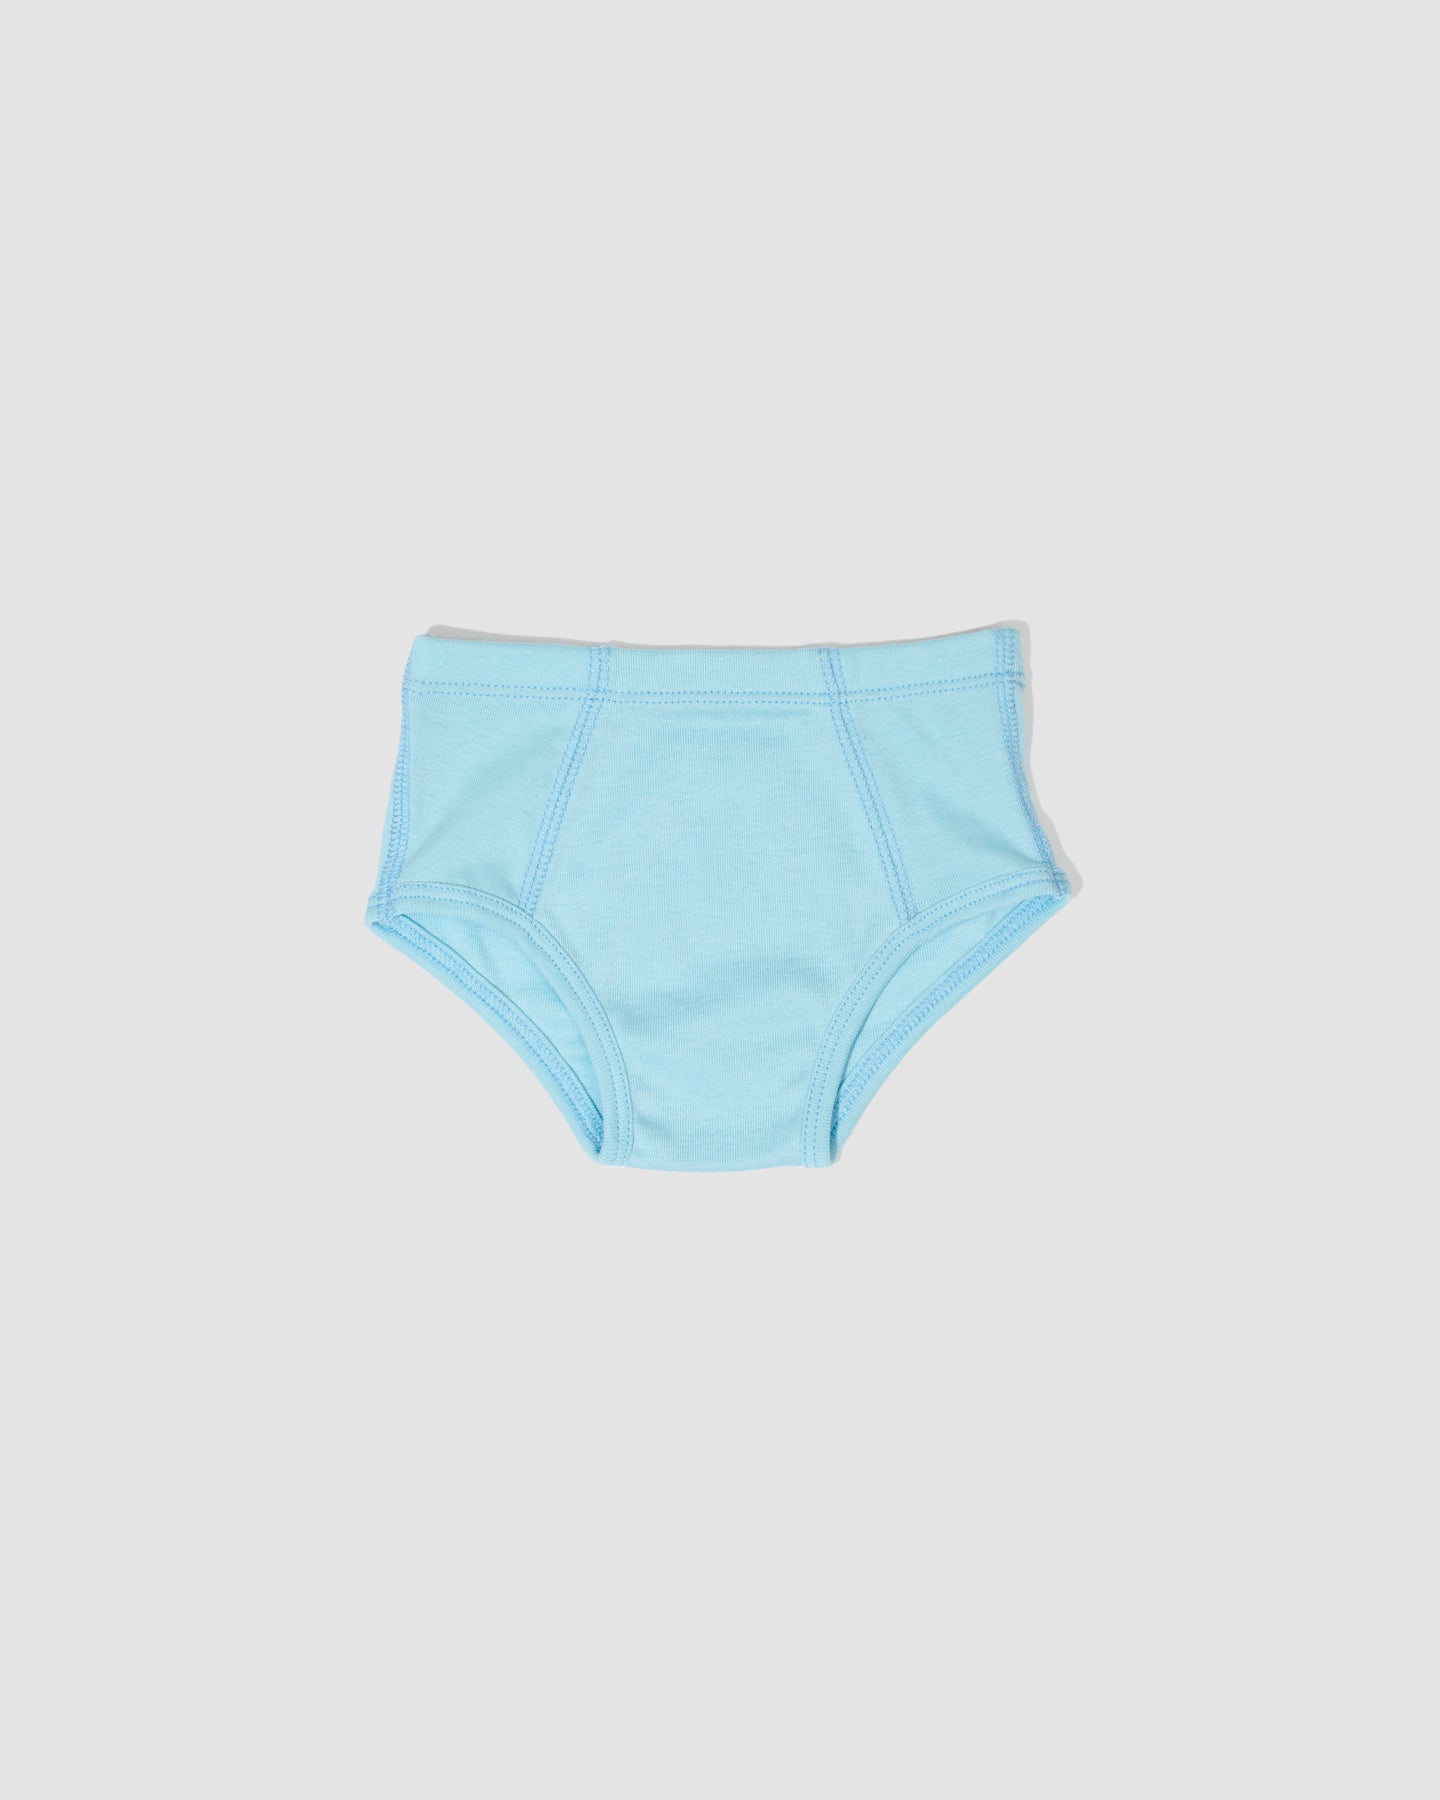 Buy Kids Little Girls Underwear Toddler Baby 100% Cotton Soft